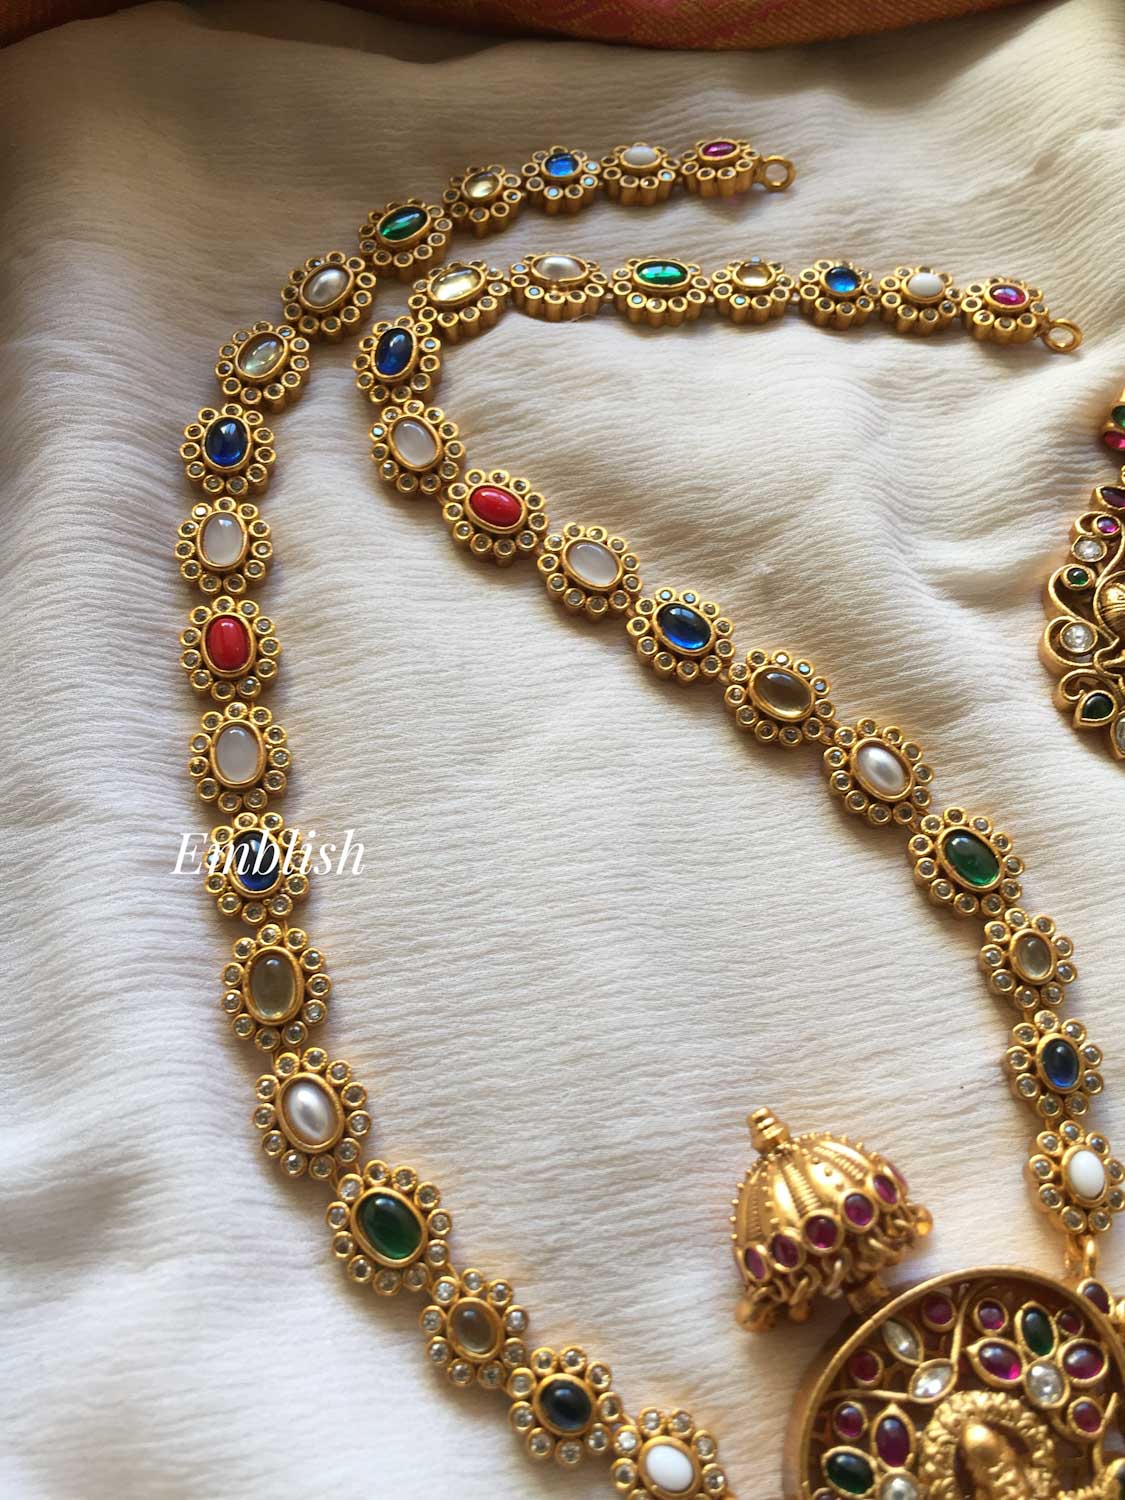 Navrathna Krishna kemp pendant neckpiece 